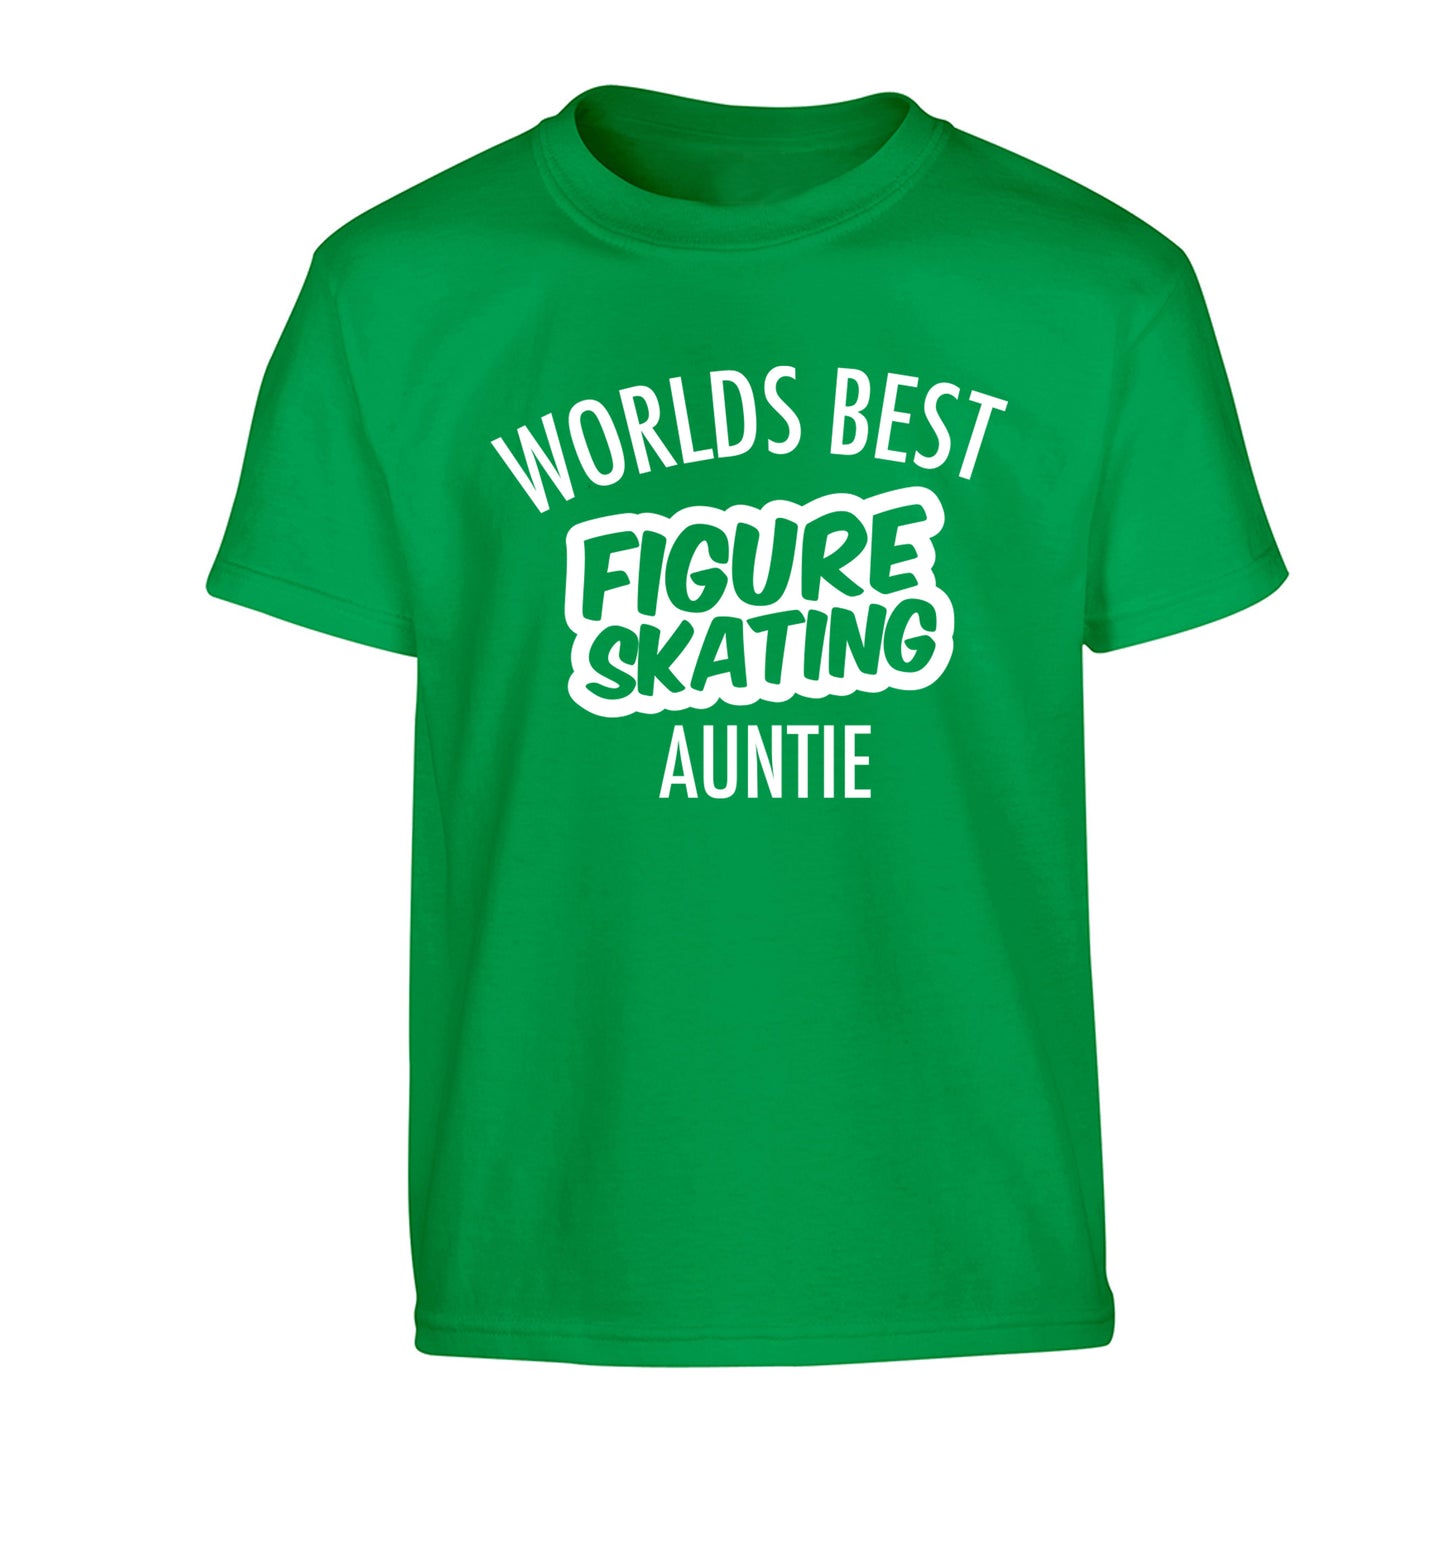 Worlds best figure skating auntie Children's green Tshirt 12-14 Years